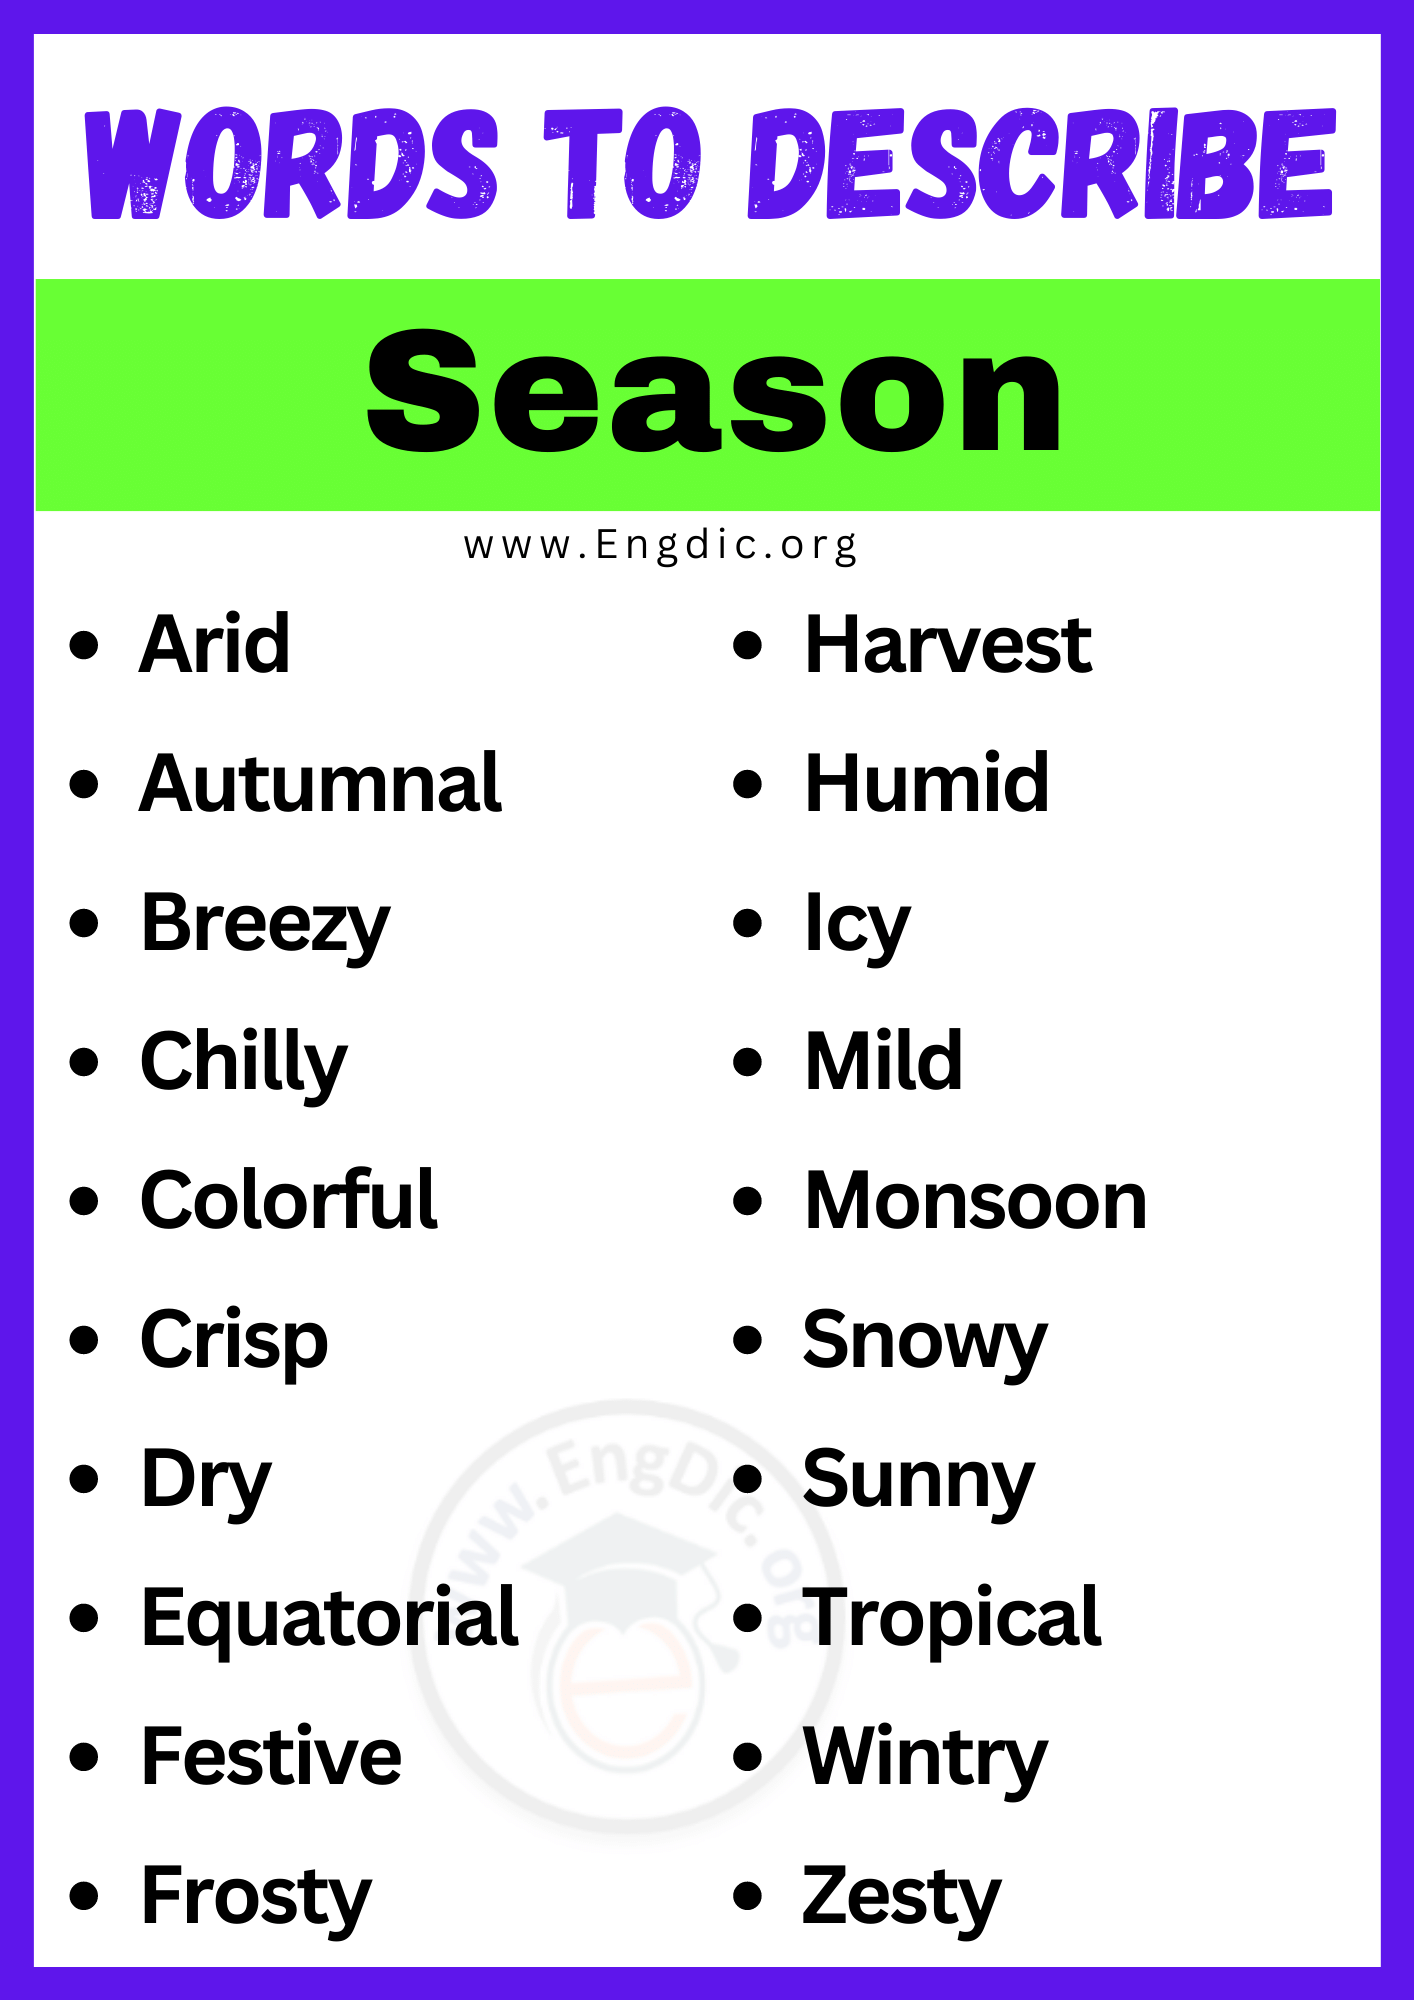 Words to Describe Season